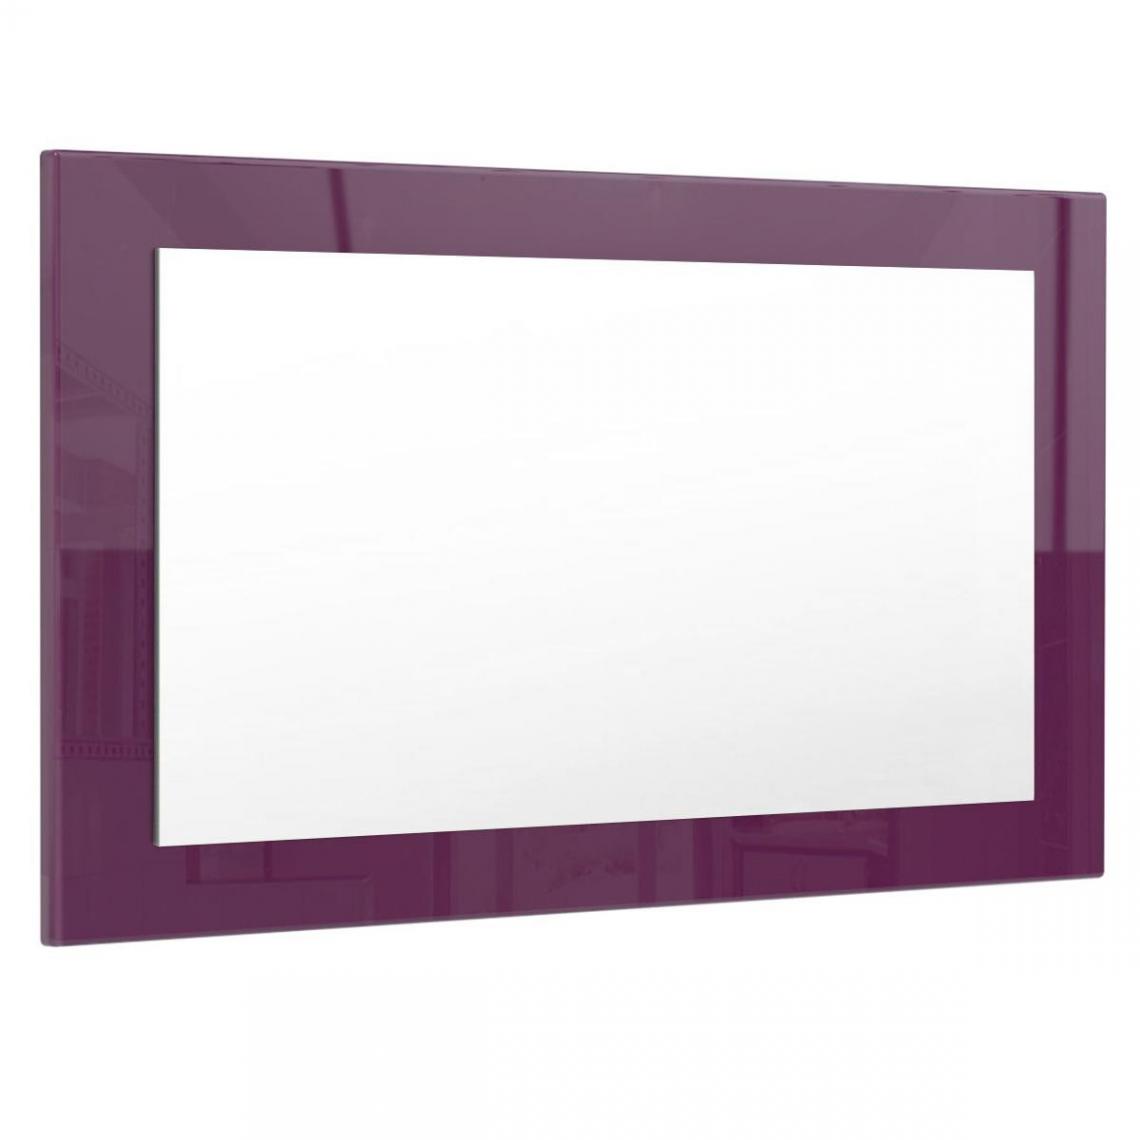 Mpc - Miroir mûre brillant (HxLxP): 45 x 89 x 2 - Miroir de salle de bain